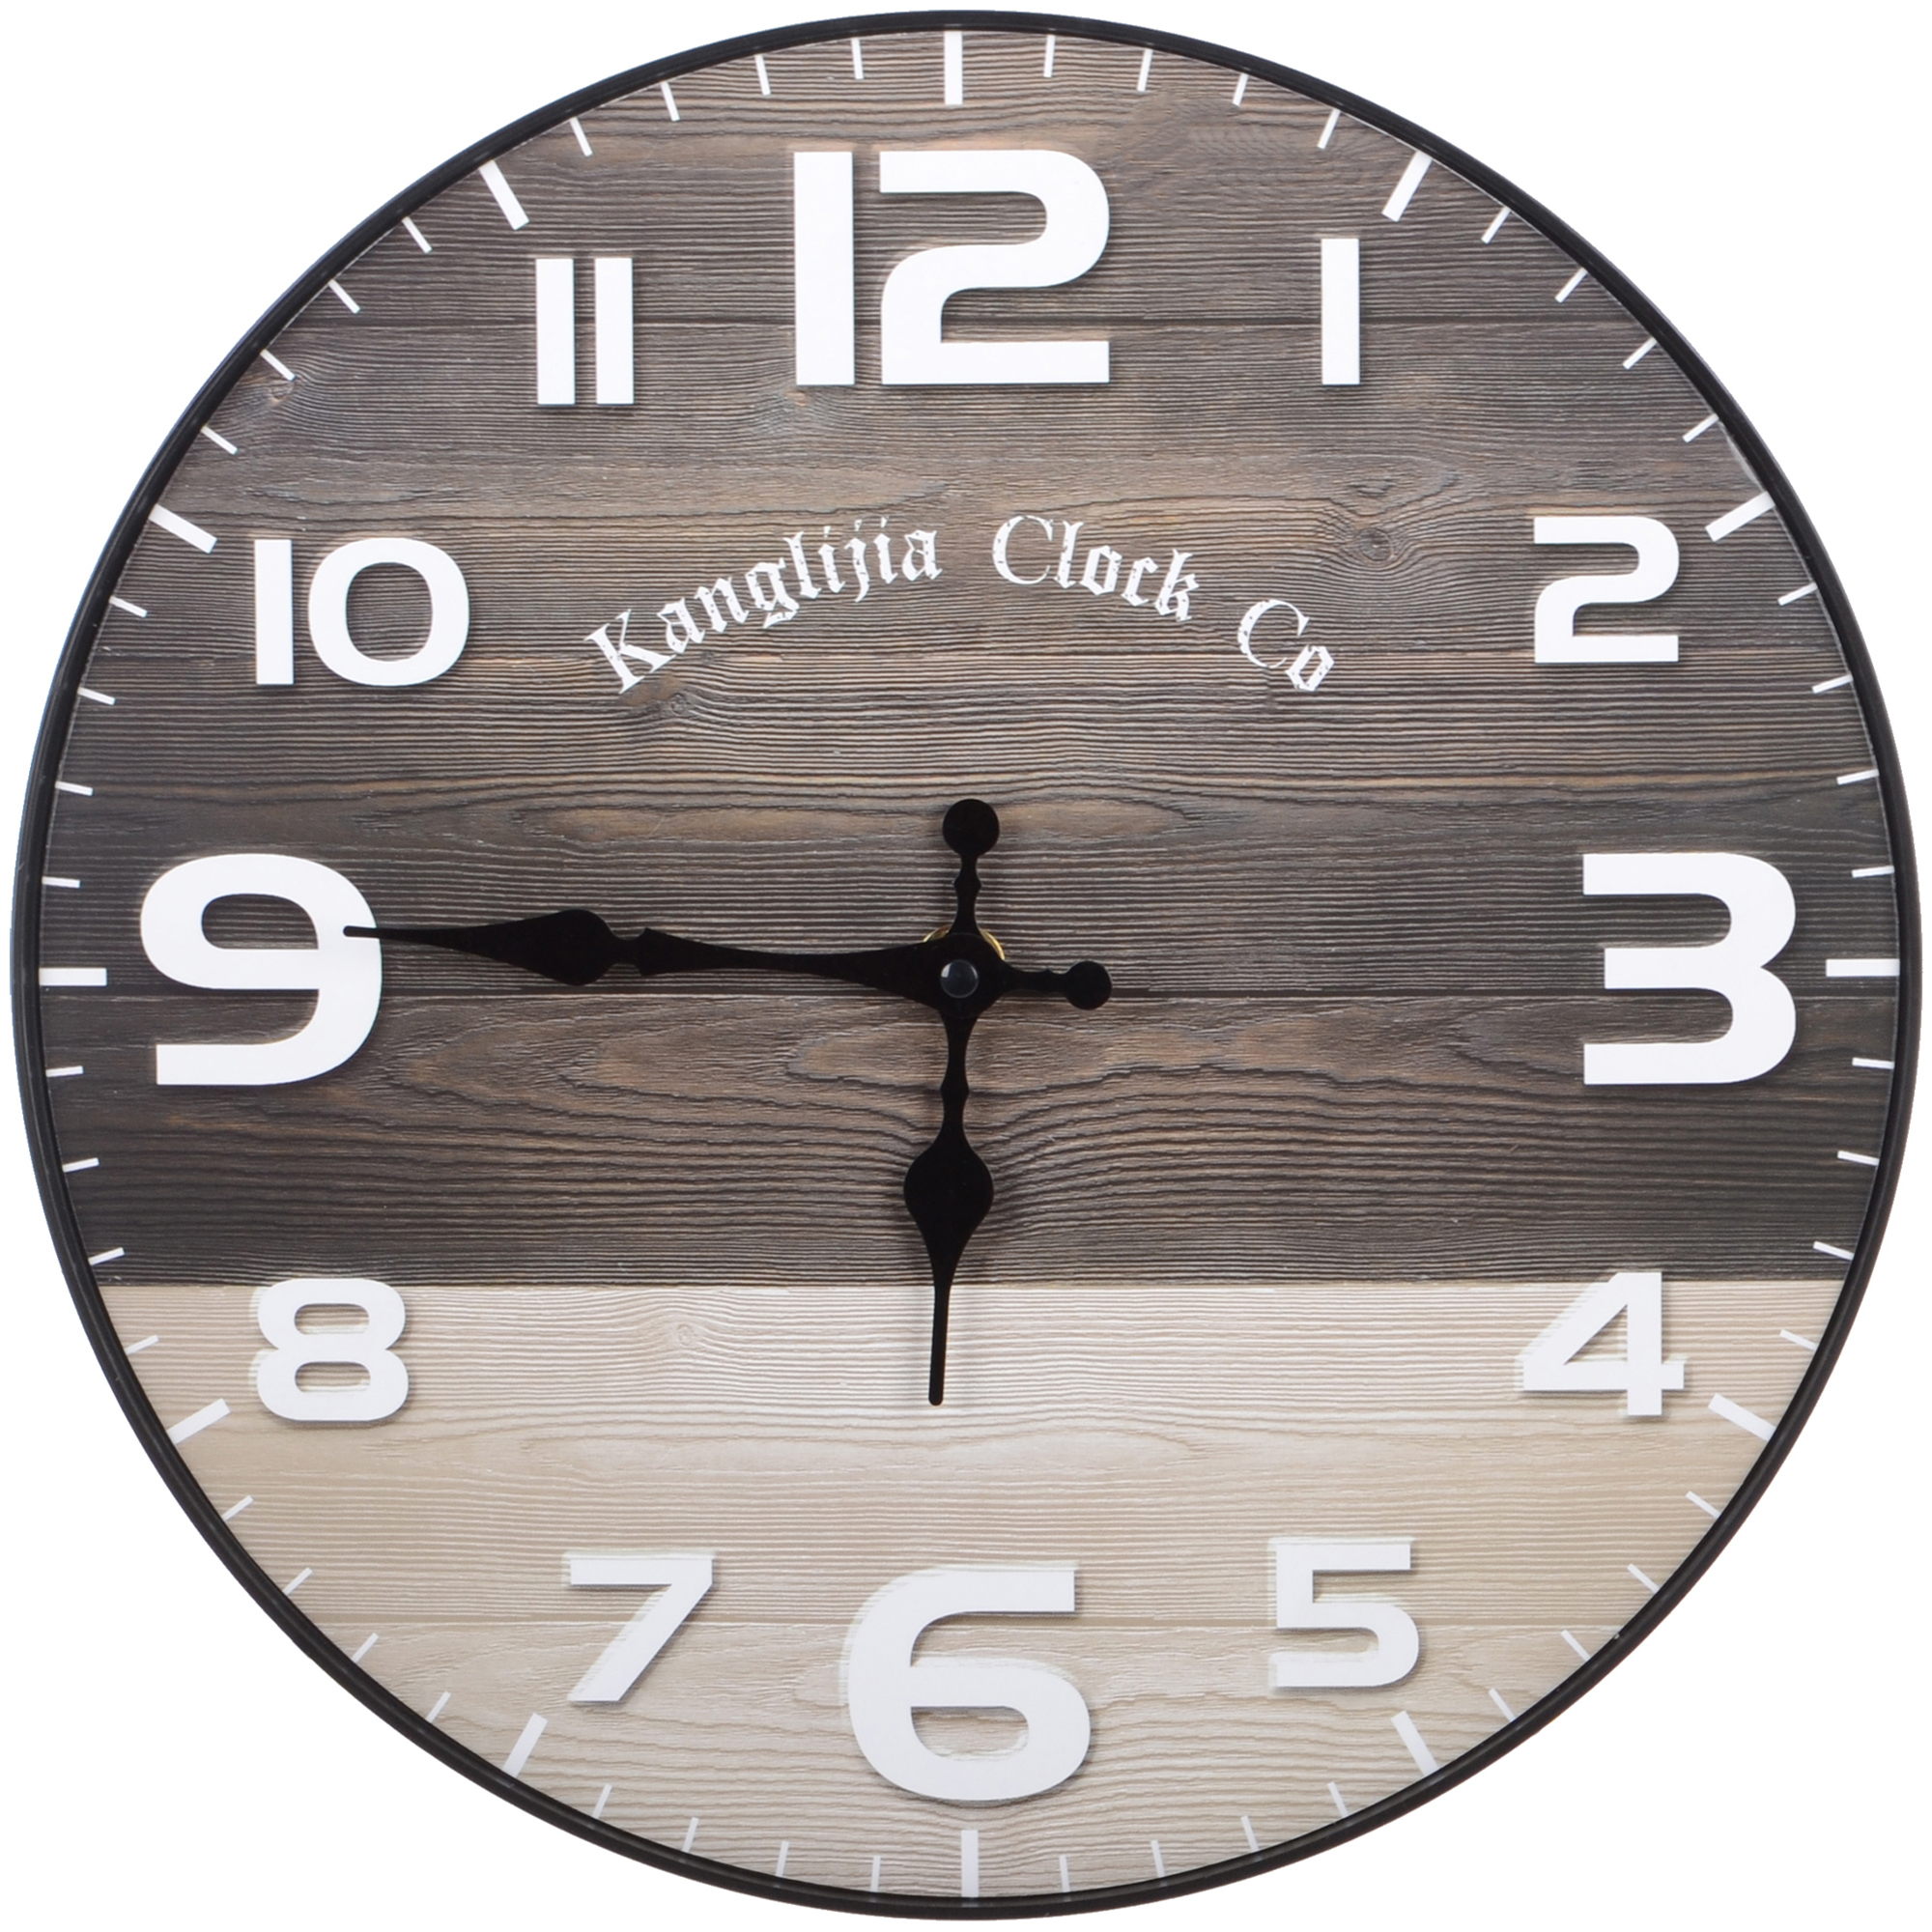 Часы настенные Kanglijia Clock коричневые 29,5х29,5х3,5 см часы настенные kanglijia clock серые 40х40х4 7 см